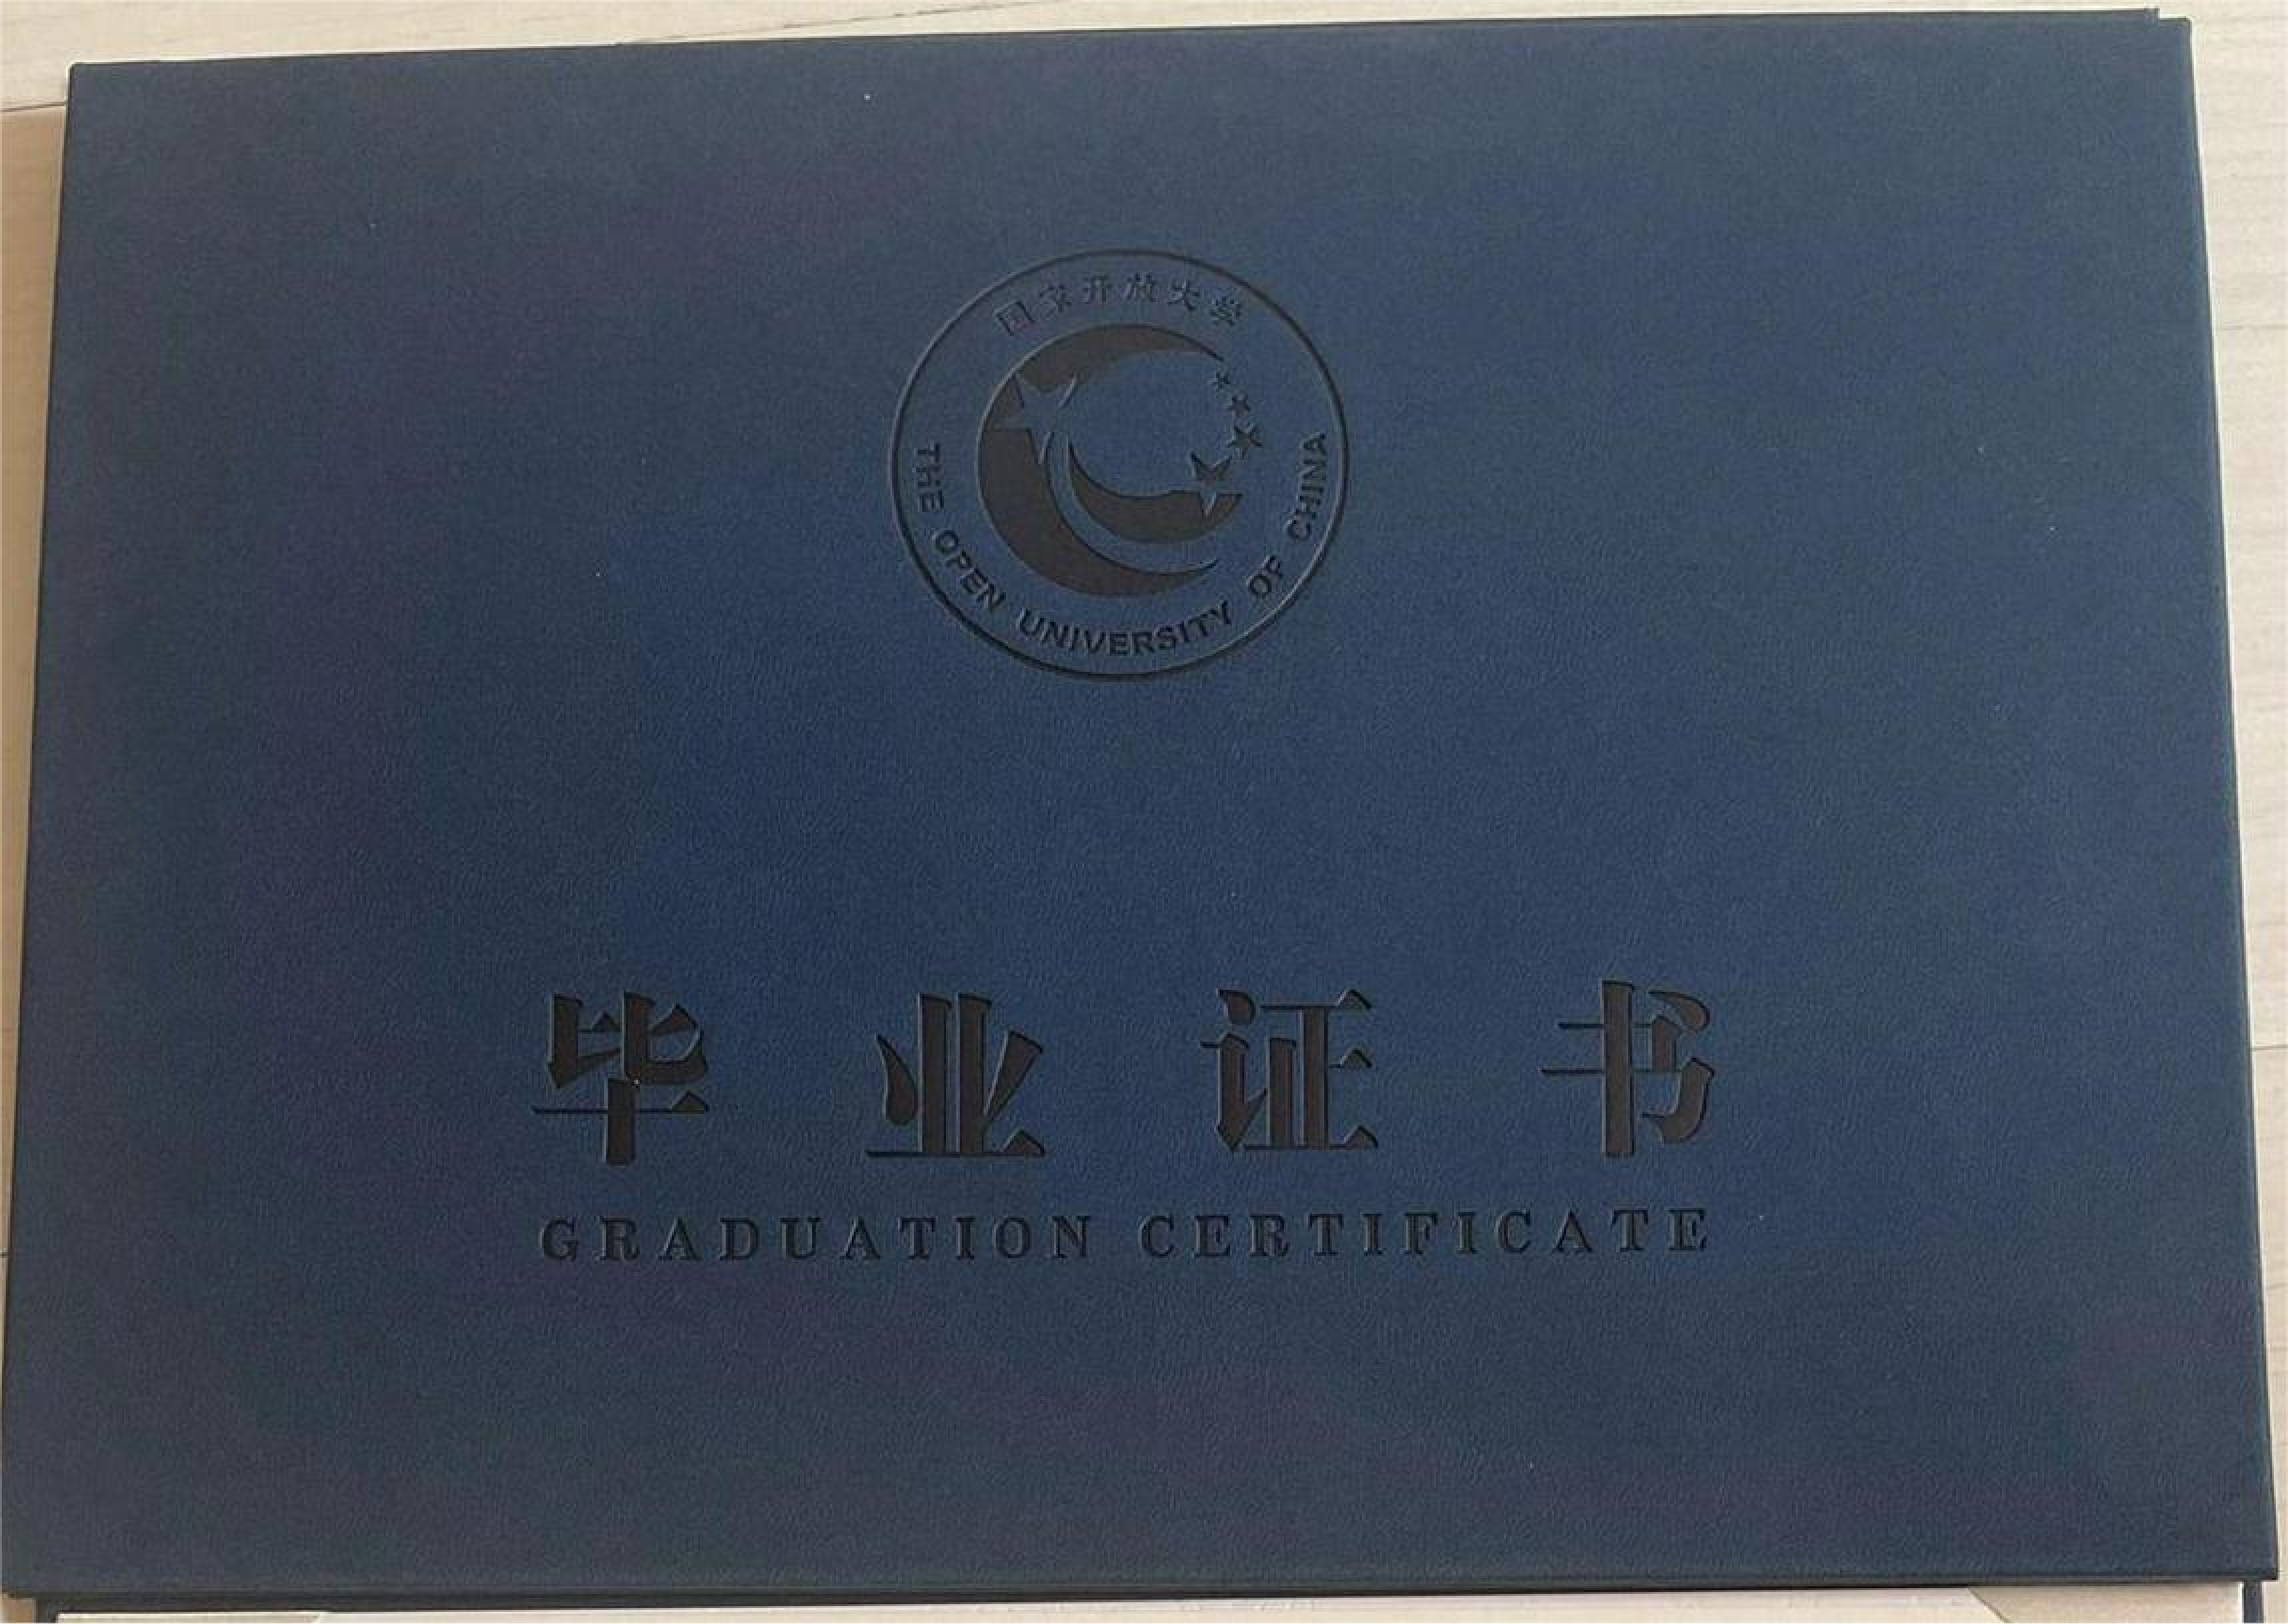 北京职高毕业证图片